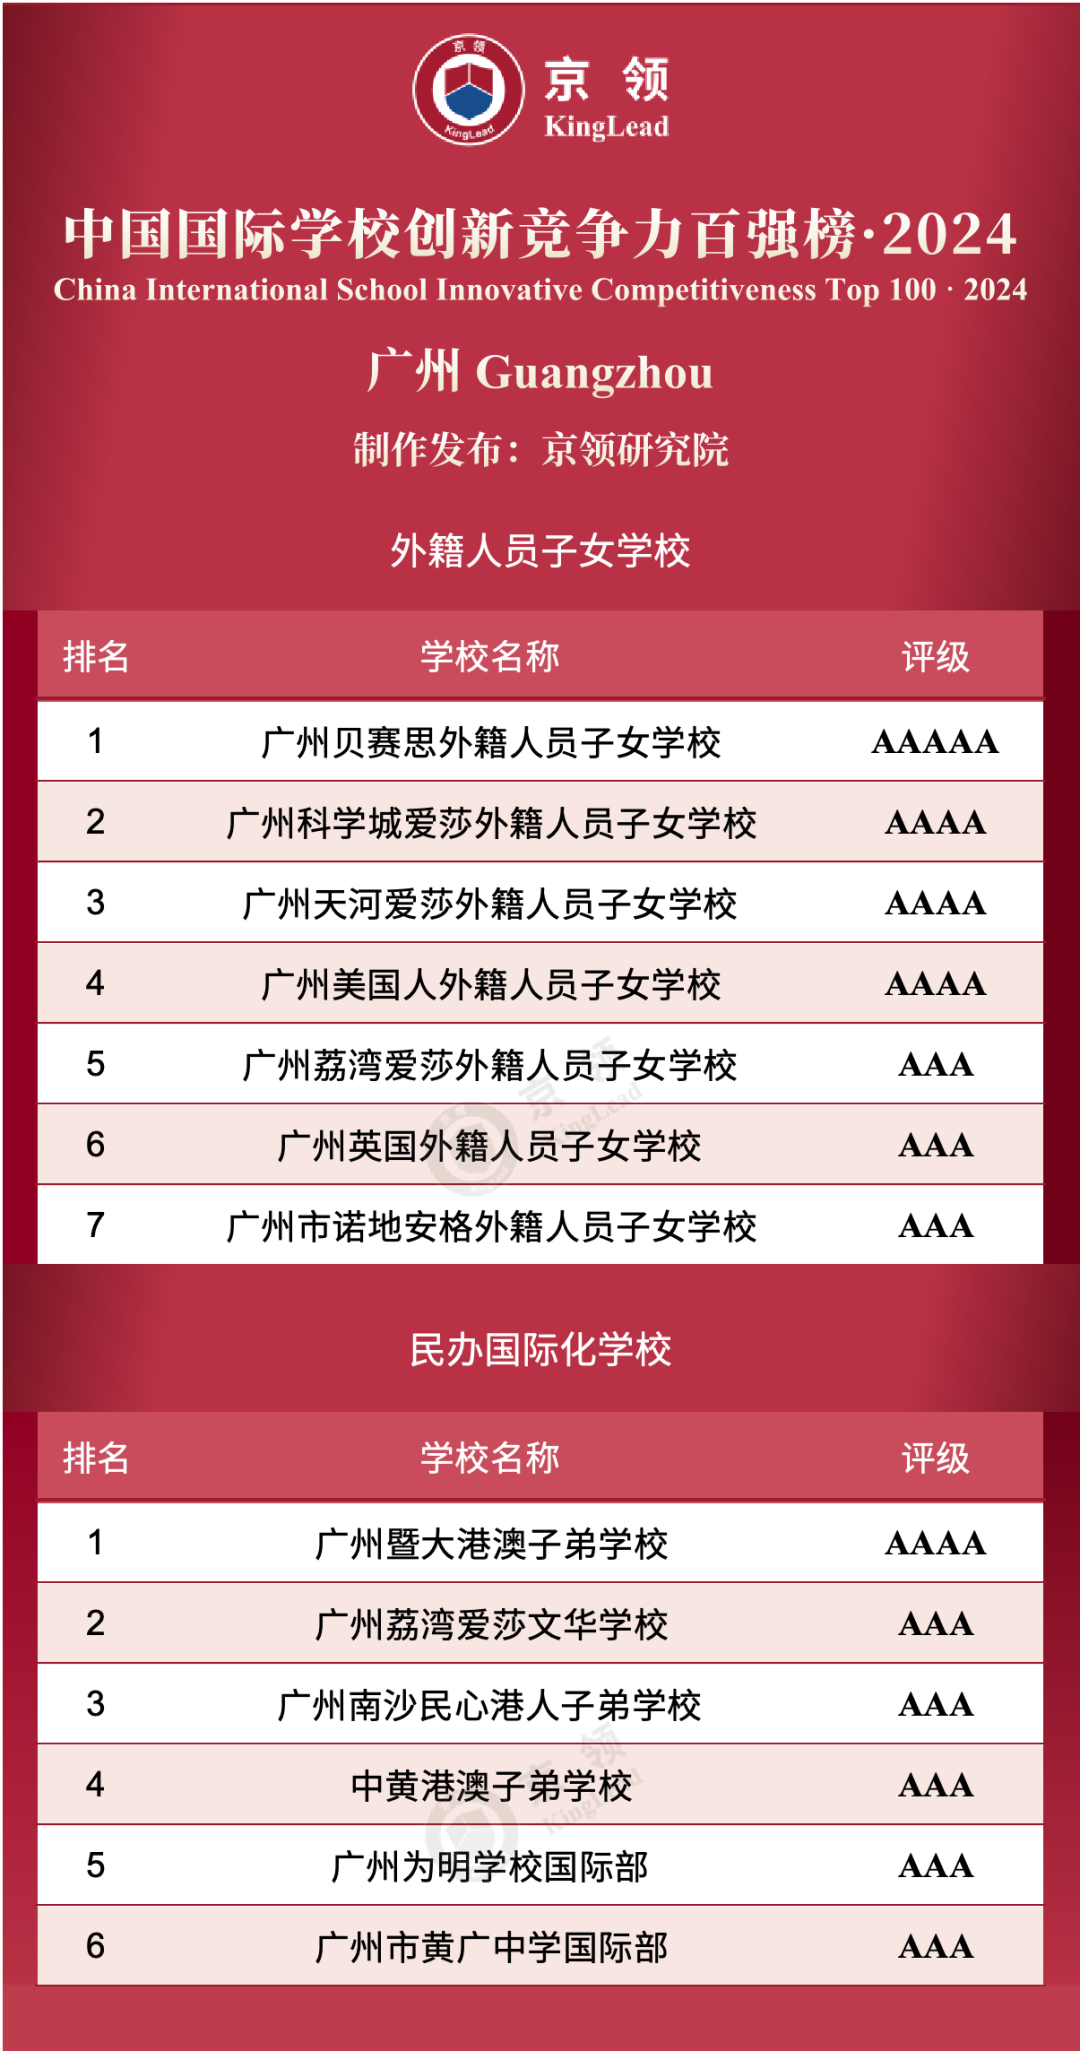 广州共13所国际学校上榜创新榜，其中外籍人员子女学校上榜7所，民办国际化学校上榜6所。